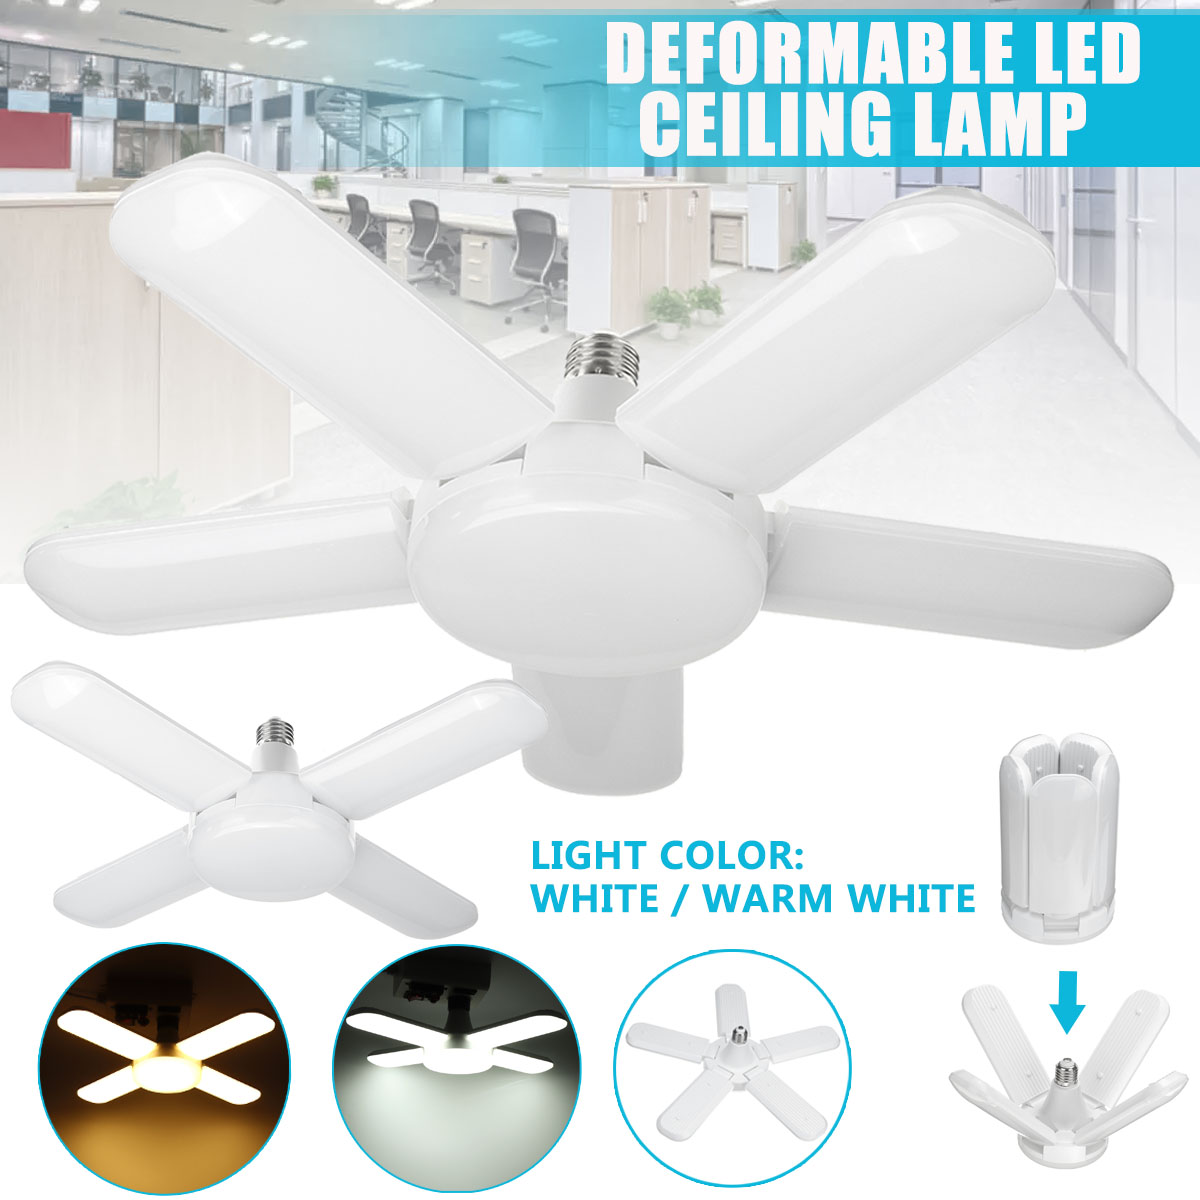 80W-85-265V-E27-LED-Garage-Shop-Work-Light-Ceiling-Deformable-Adjustable-Lamp-1732610-1